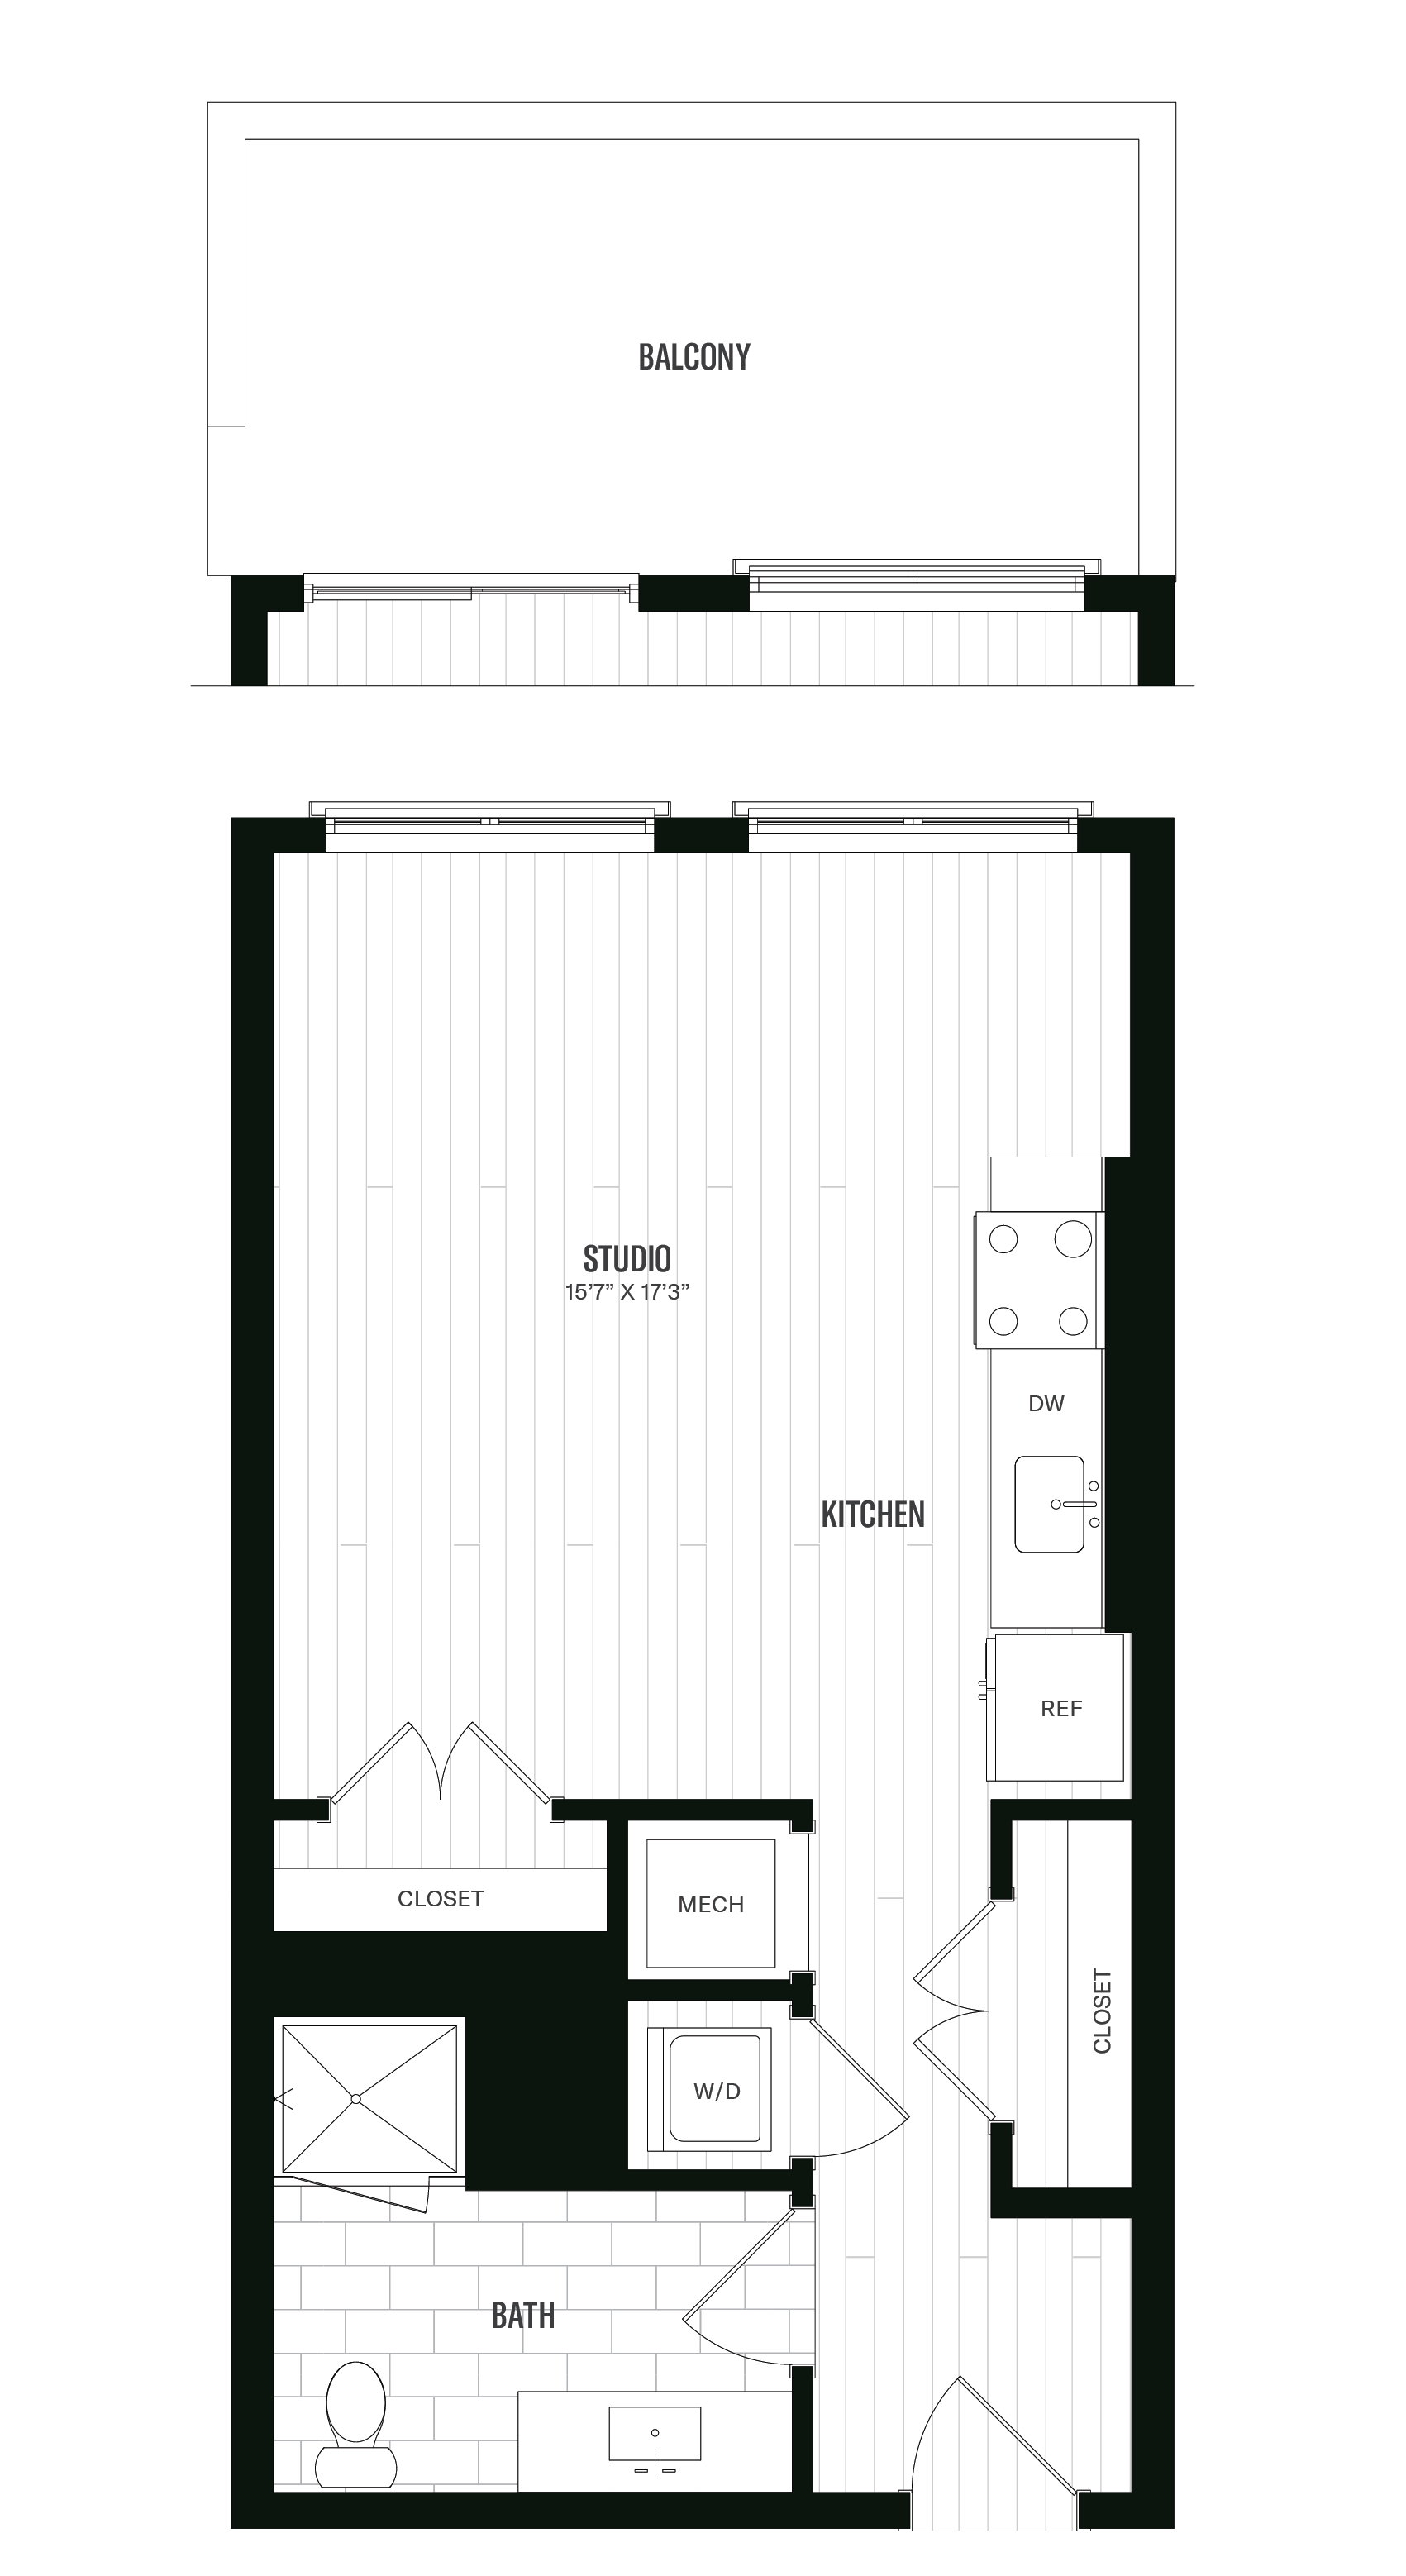 Floorplan image of unit 605